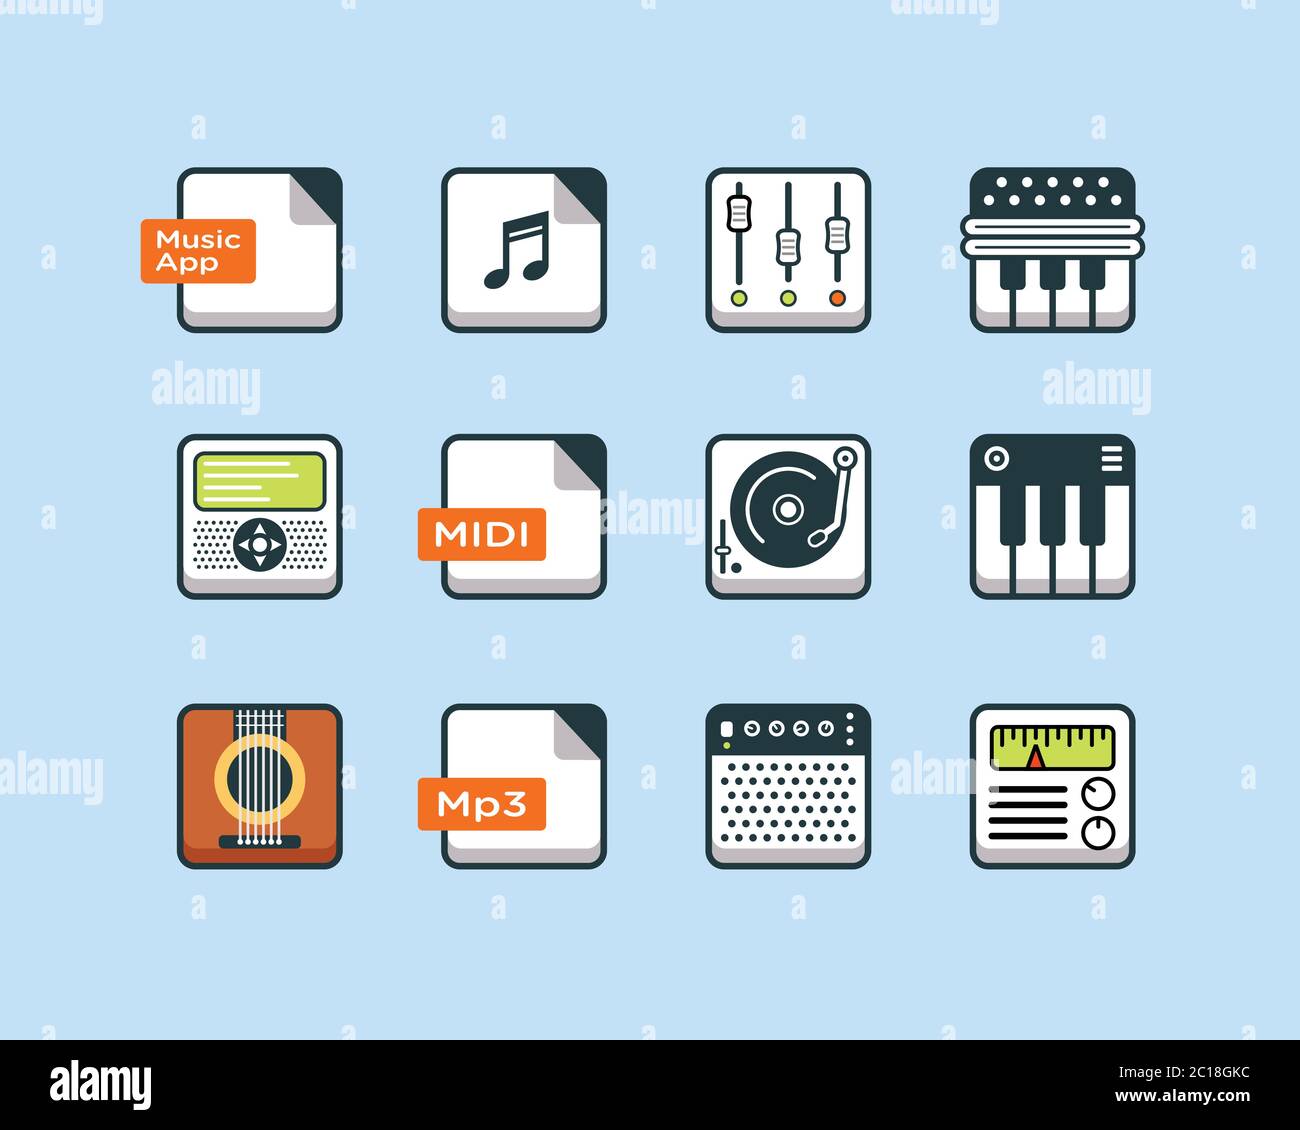 Musik-App-Symbol in abgerundetem quadratischem Kästchen. Geeignet für Design-Element für Musik-Player-Software und App. Sammlung moderner Audio-Player-Technologie. Stock Vektor